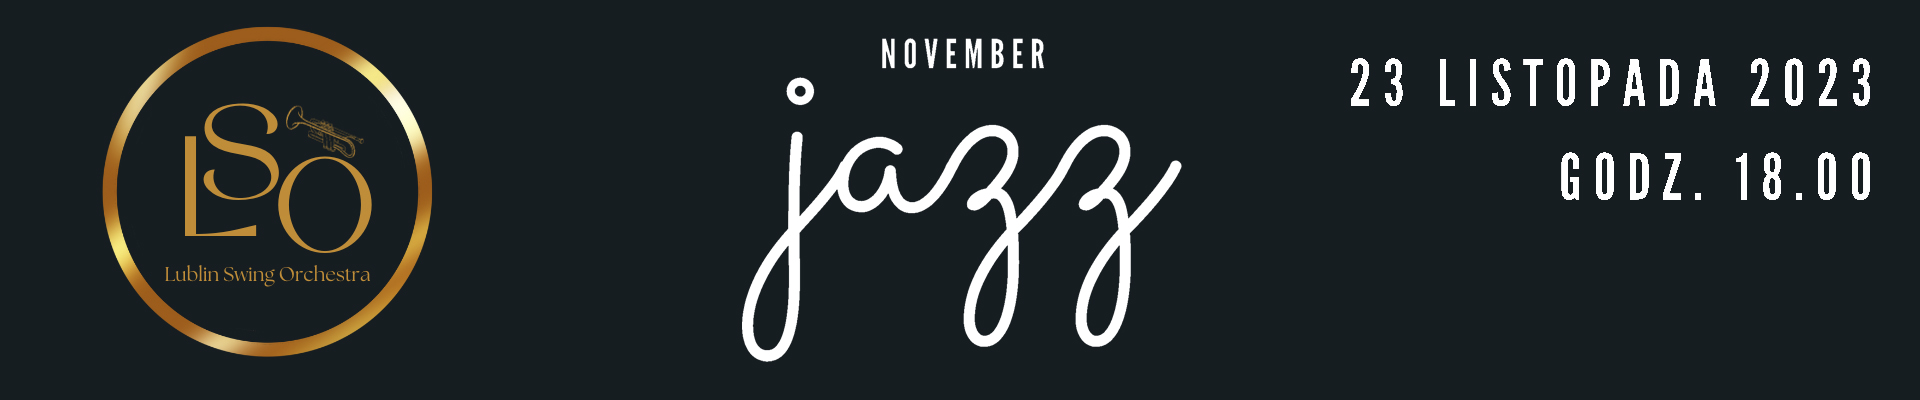 KONCERT „November jazz” w wykonaniu LUBLIN SWING ORCHESTRA